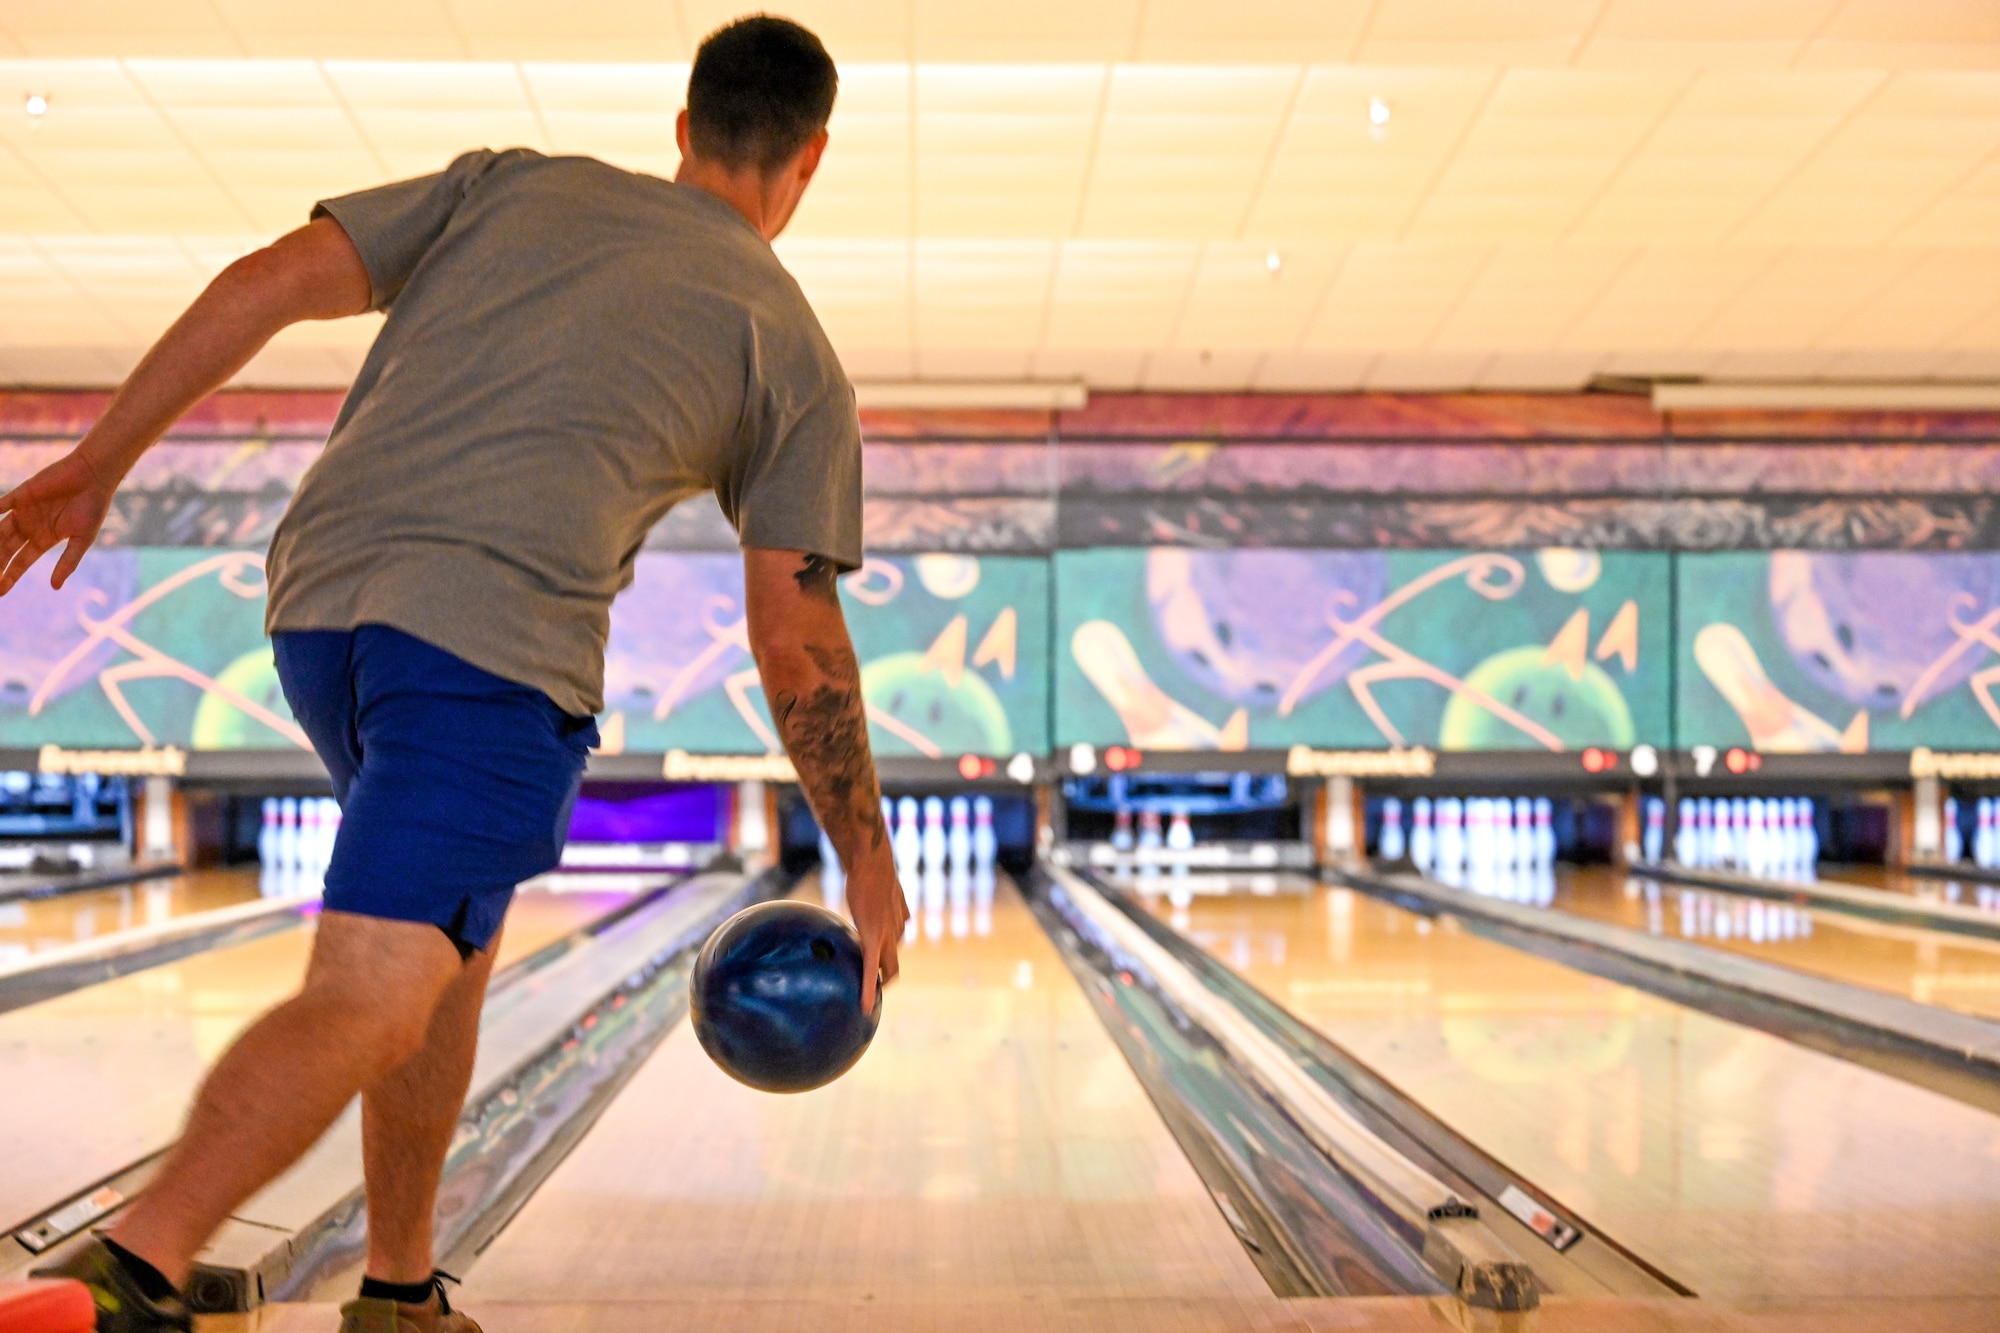 a man rolls a bowling ball